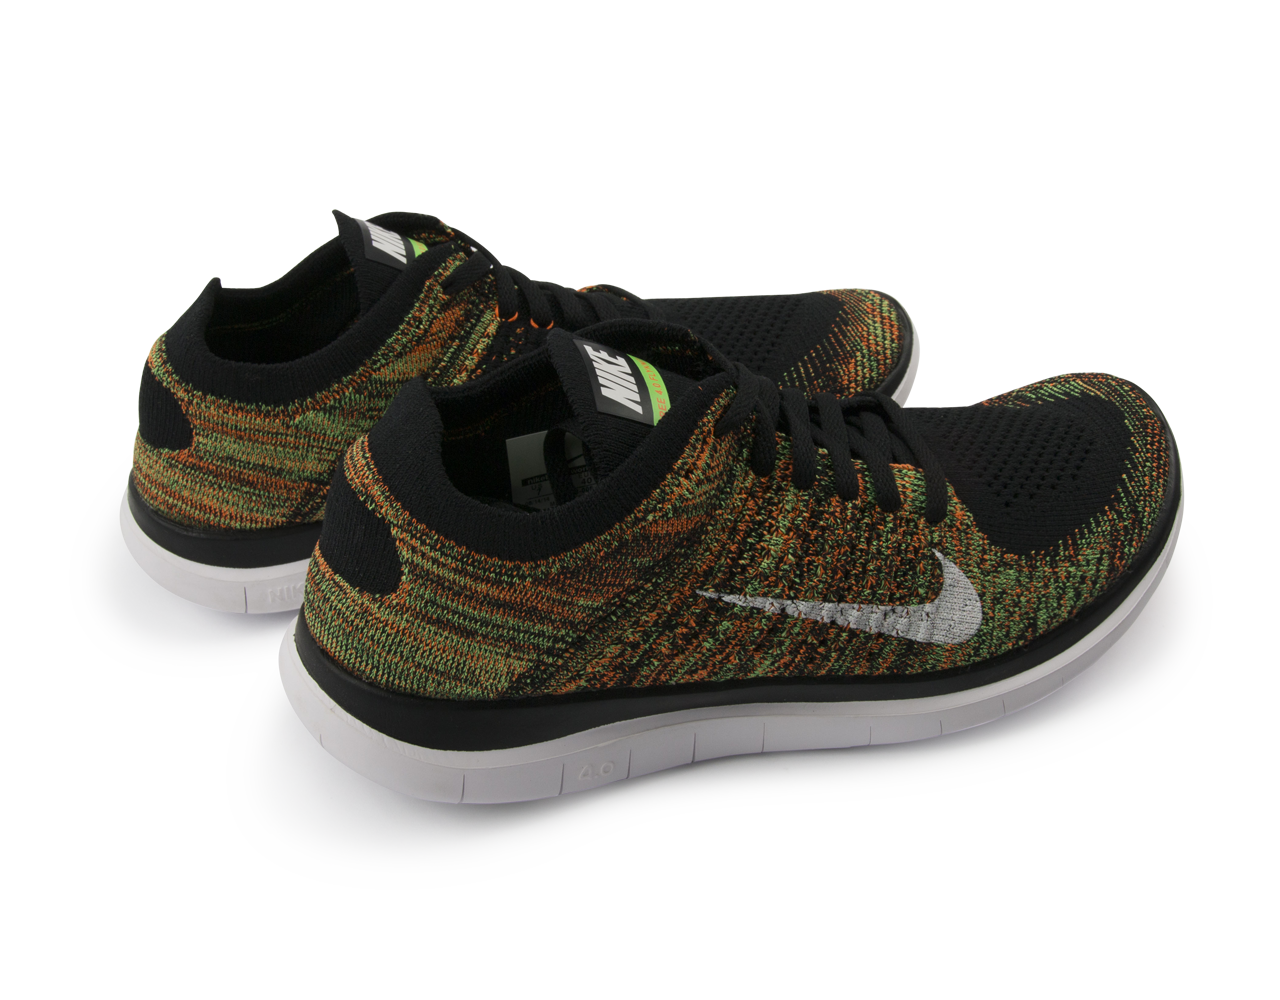 Nike Men's Free 4.0 Flyknit Running Shoes Black/White/Poison Green